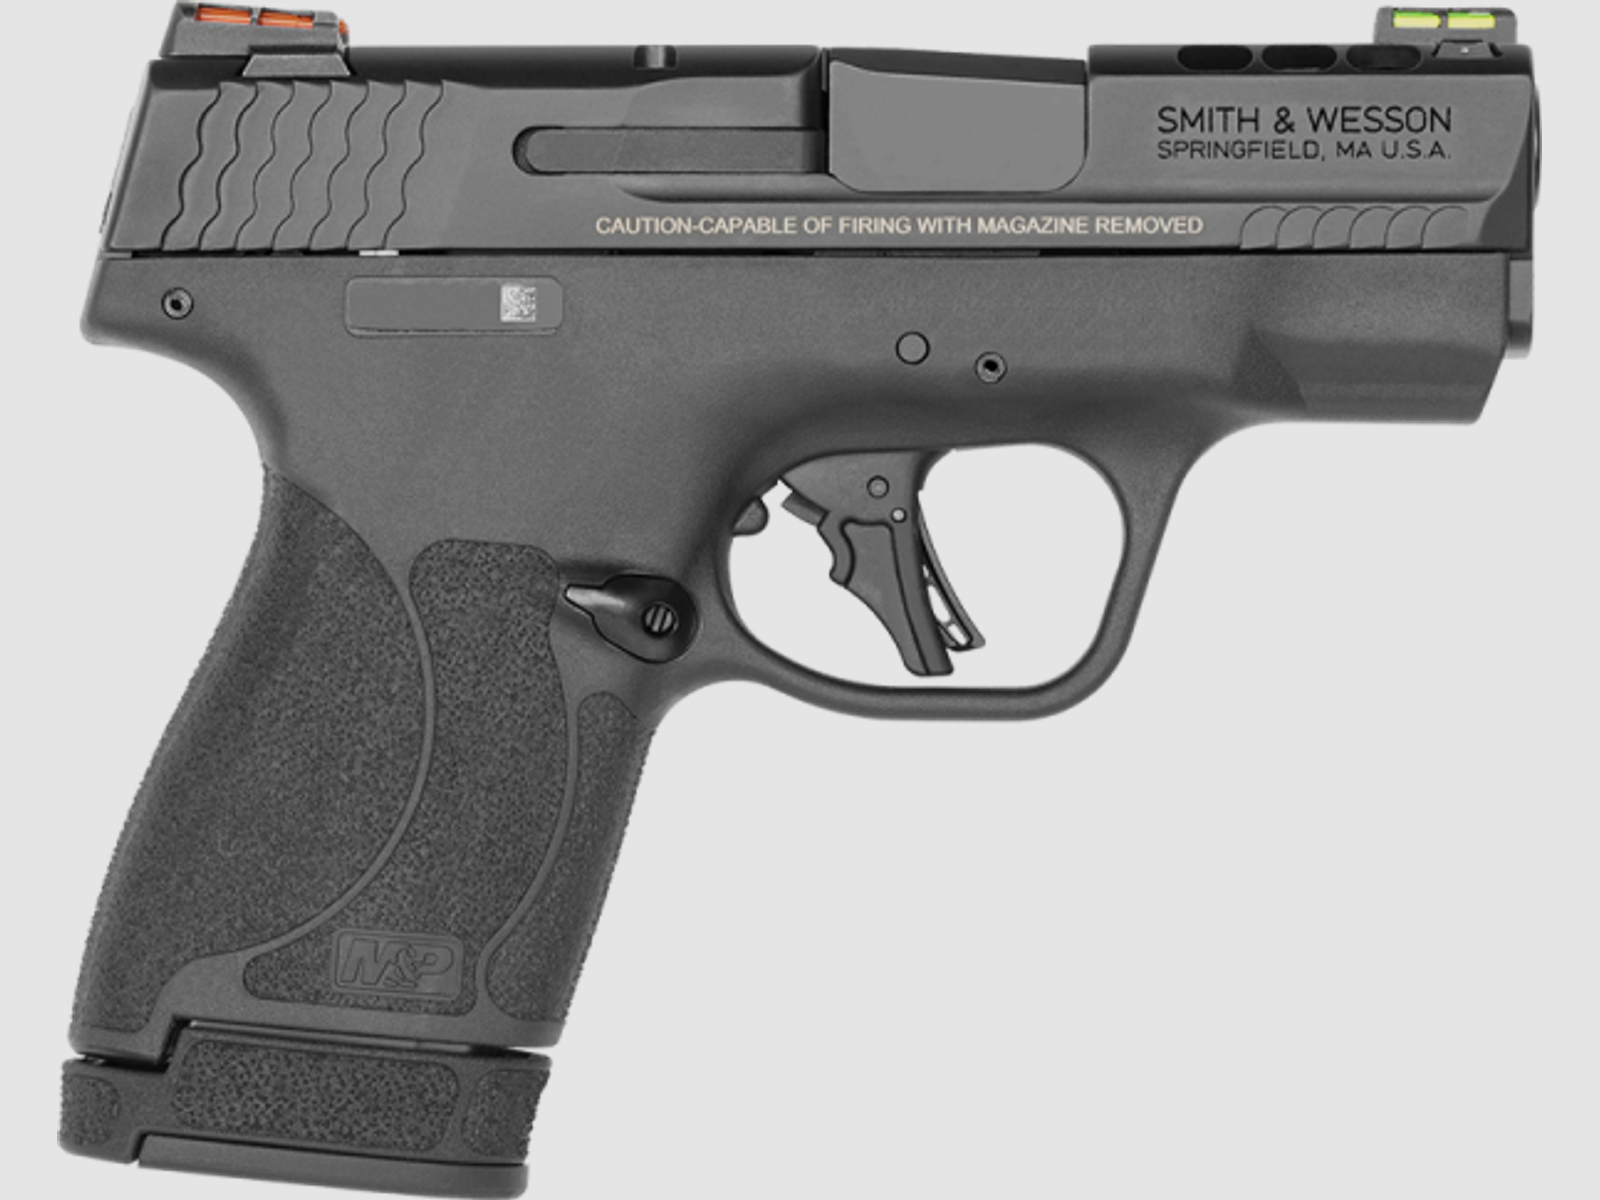 Smith & Wesson M&P 9 Shield Plus Performance Center Pistole